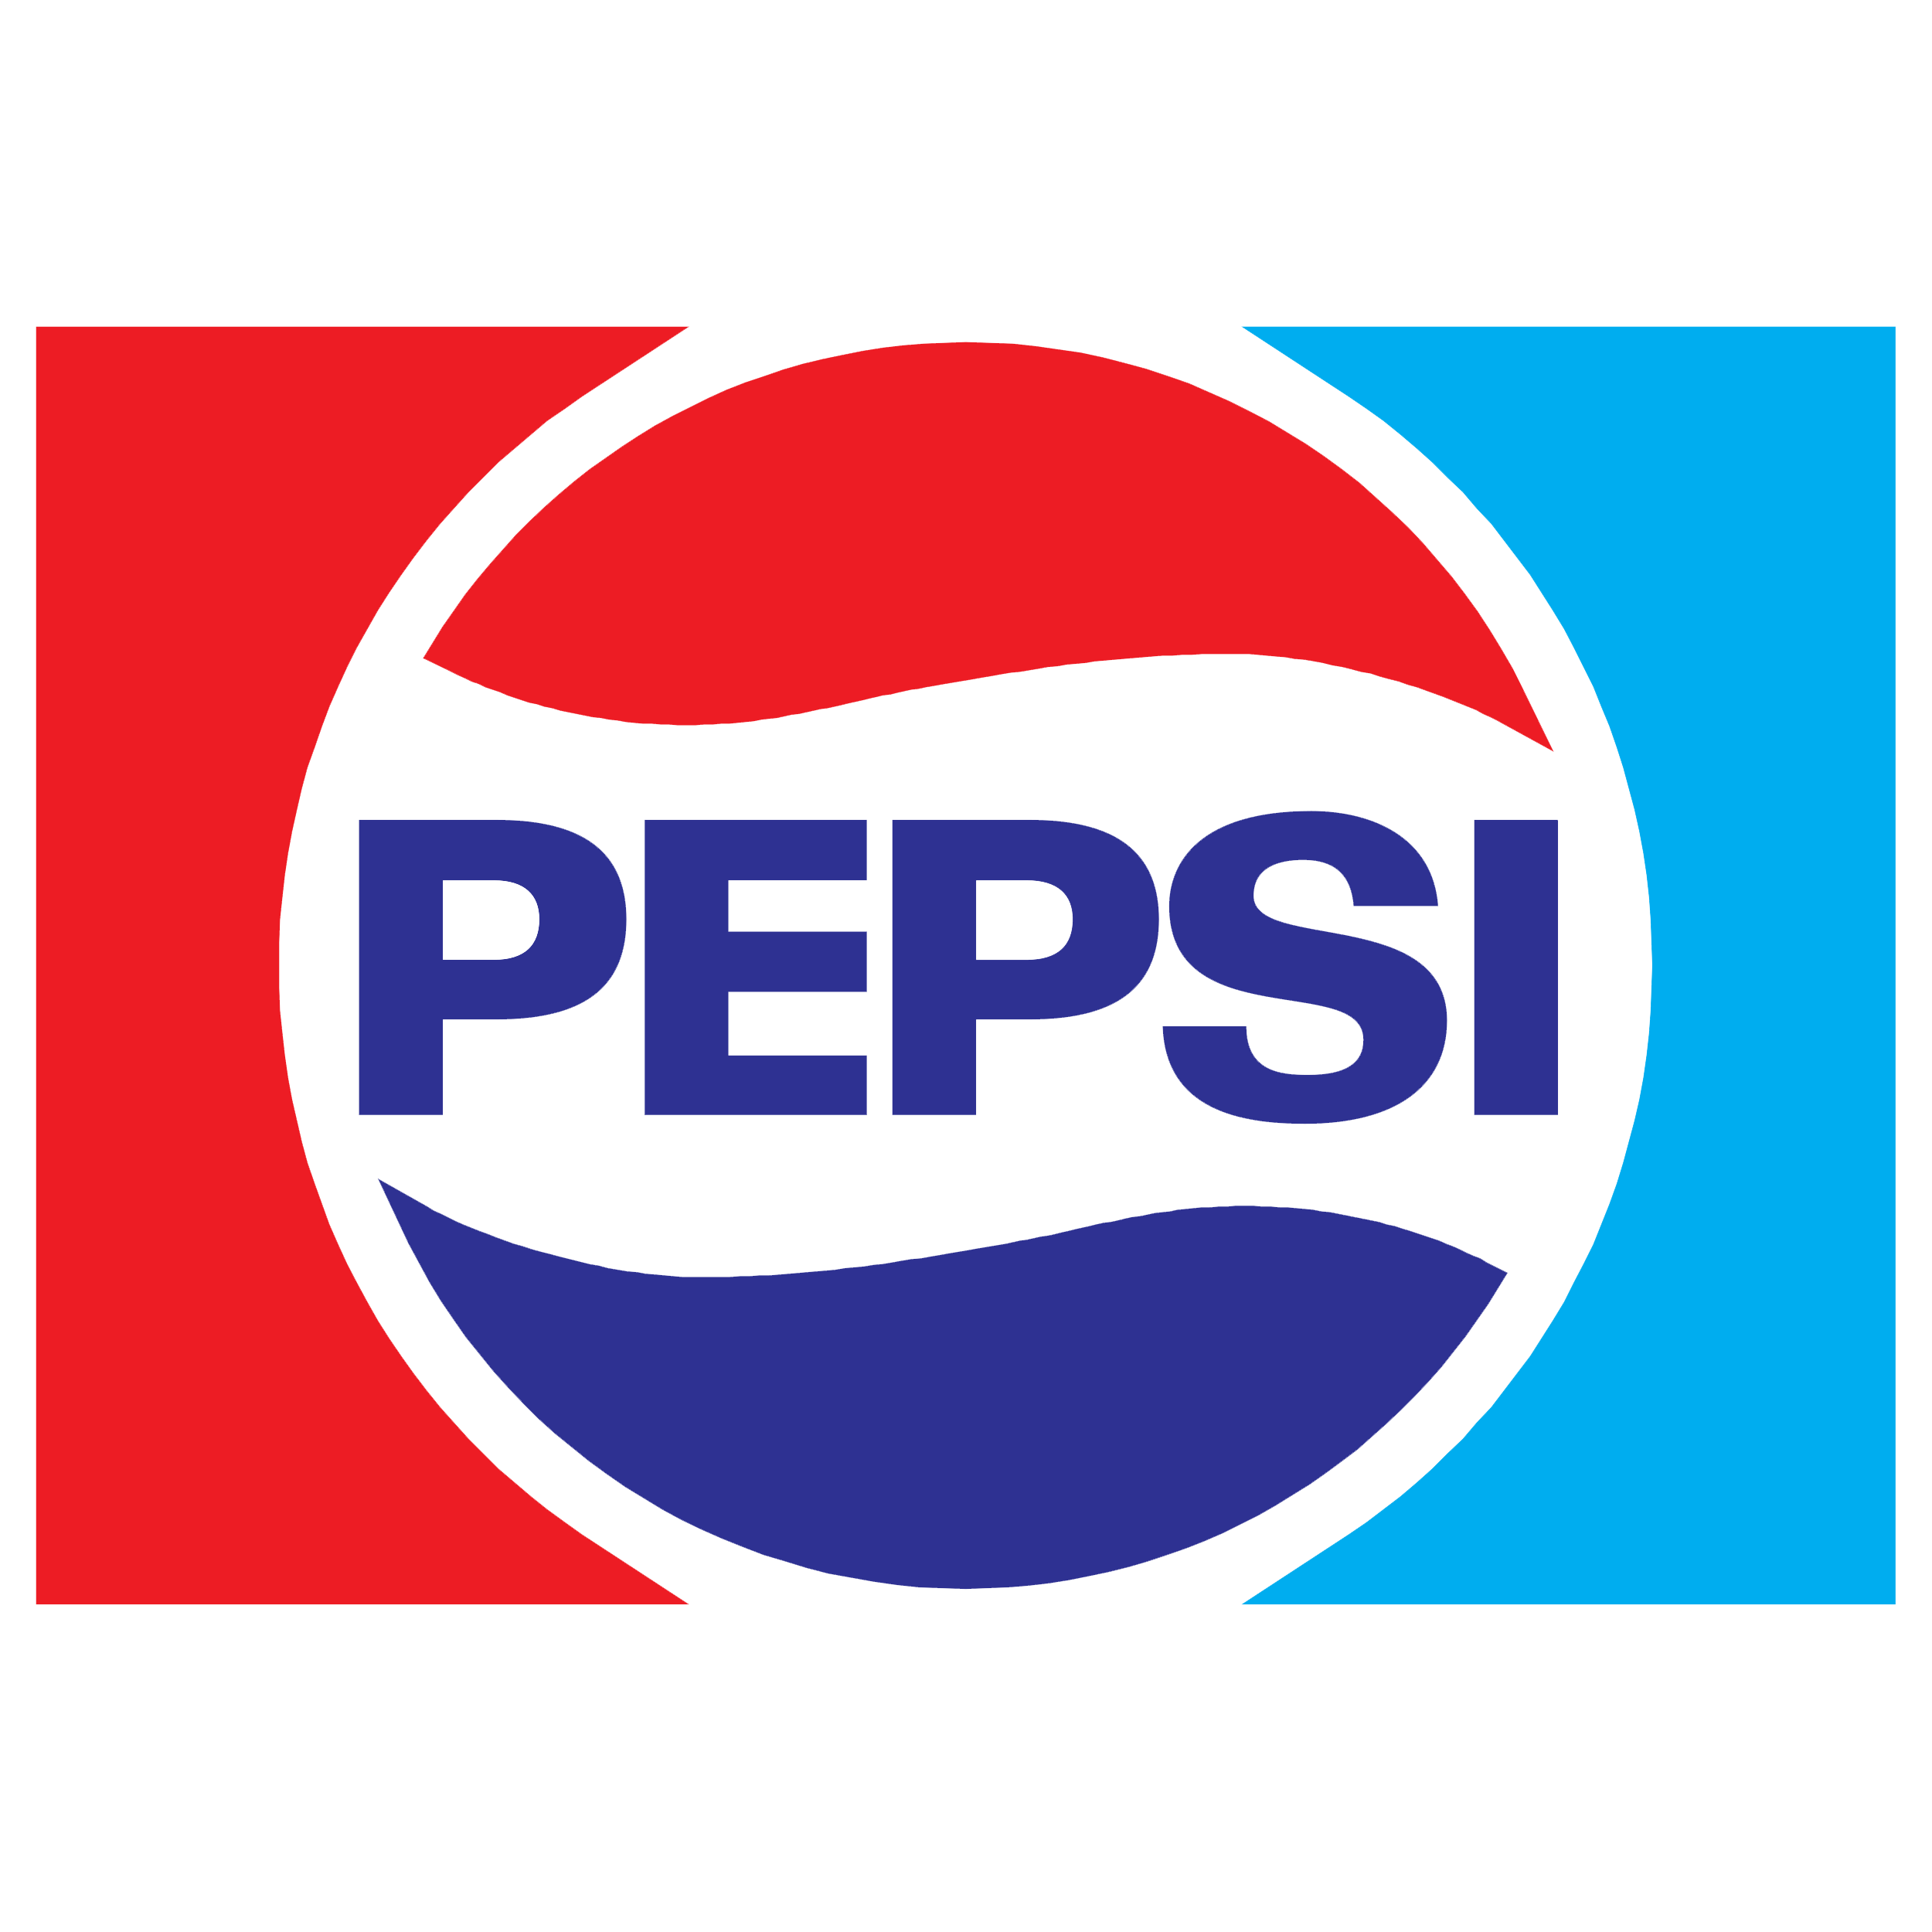 Pepsi Logo Transparent Gallery